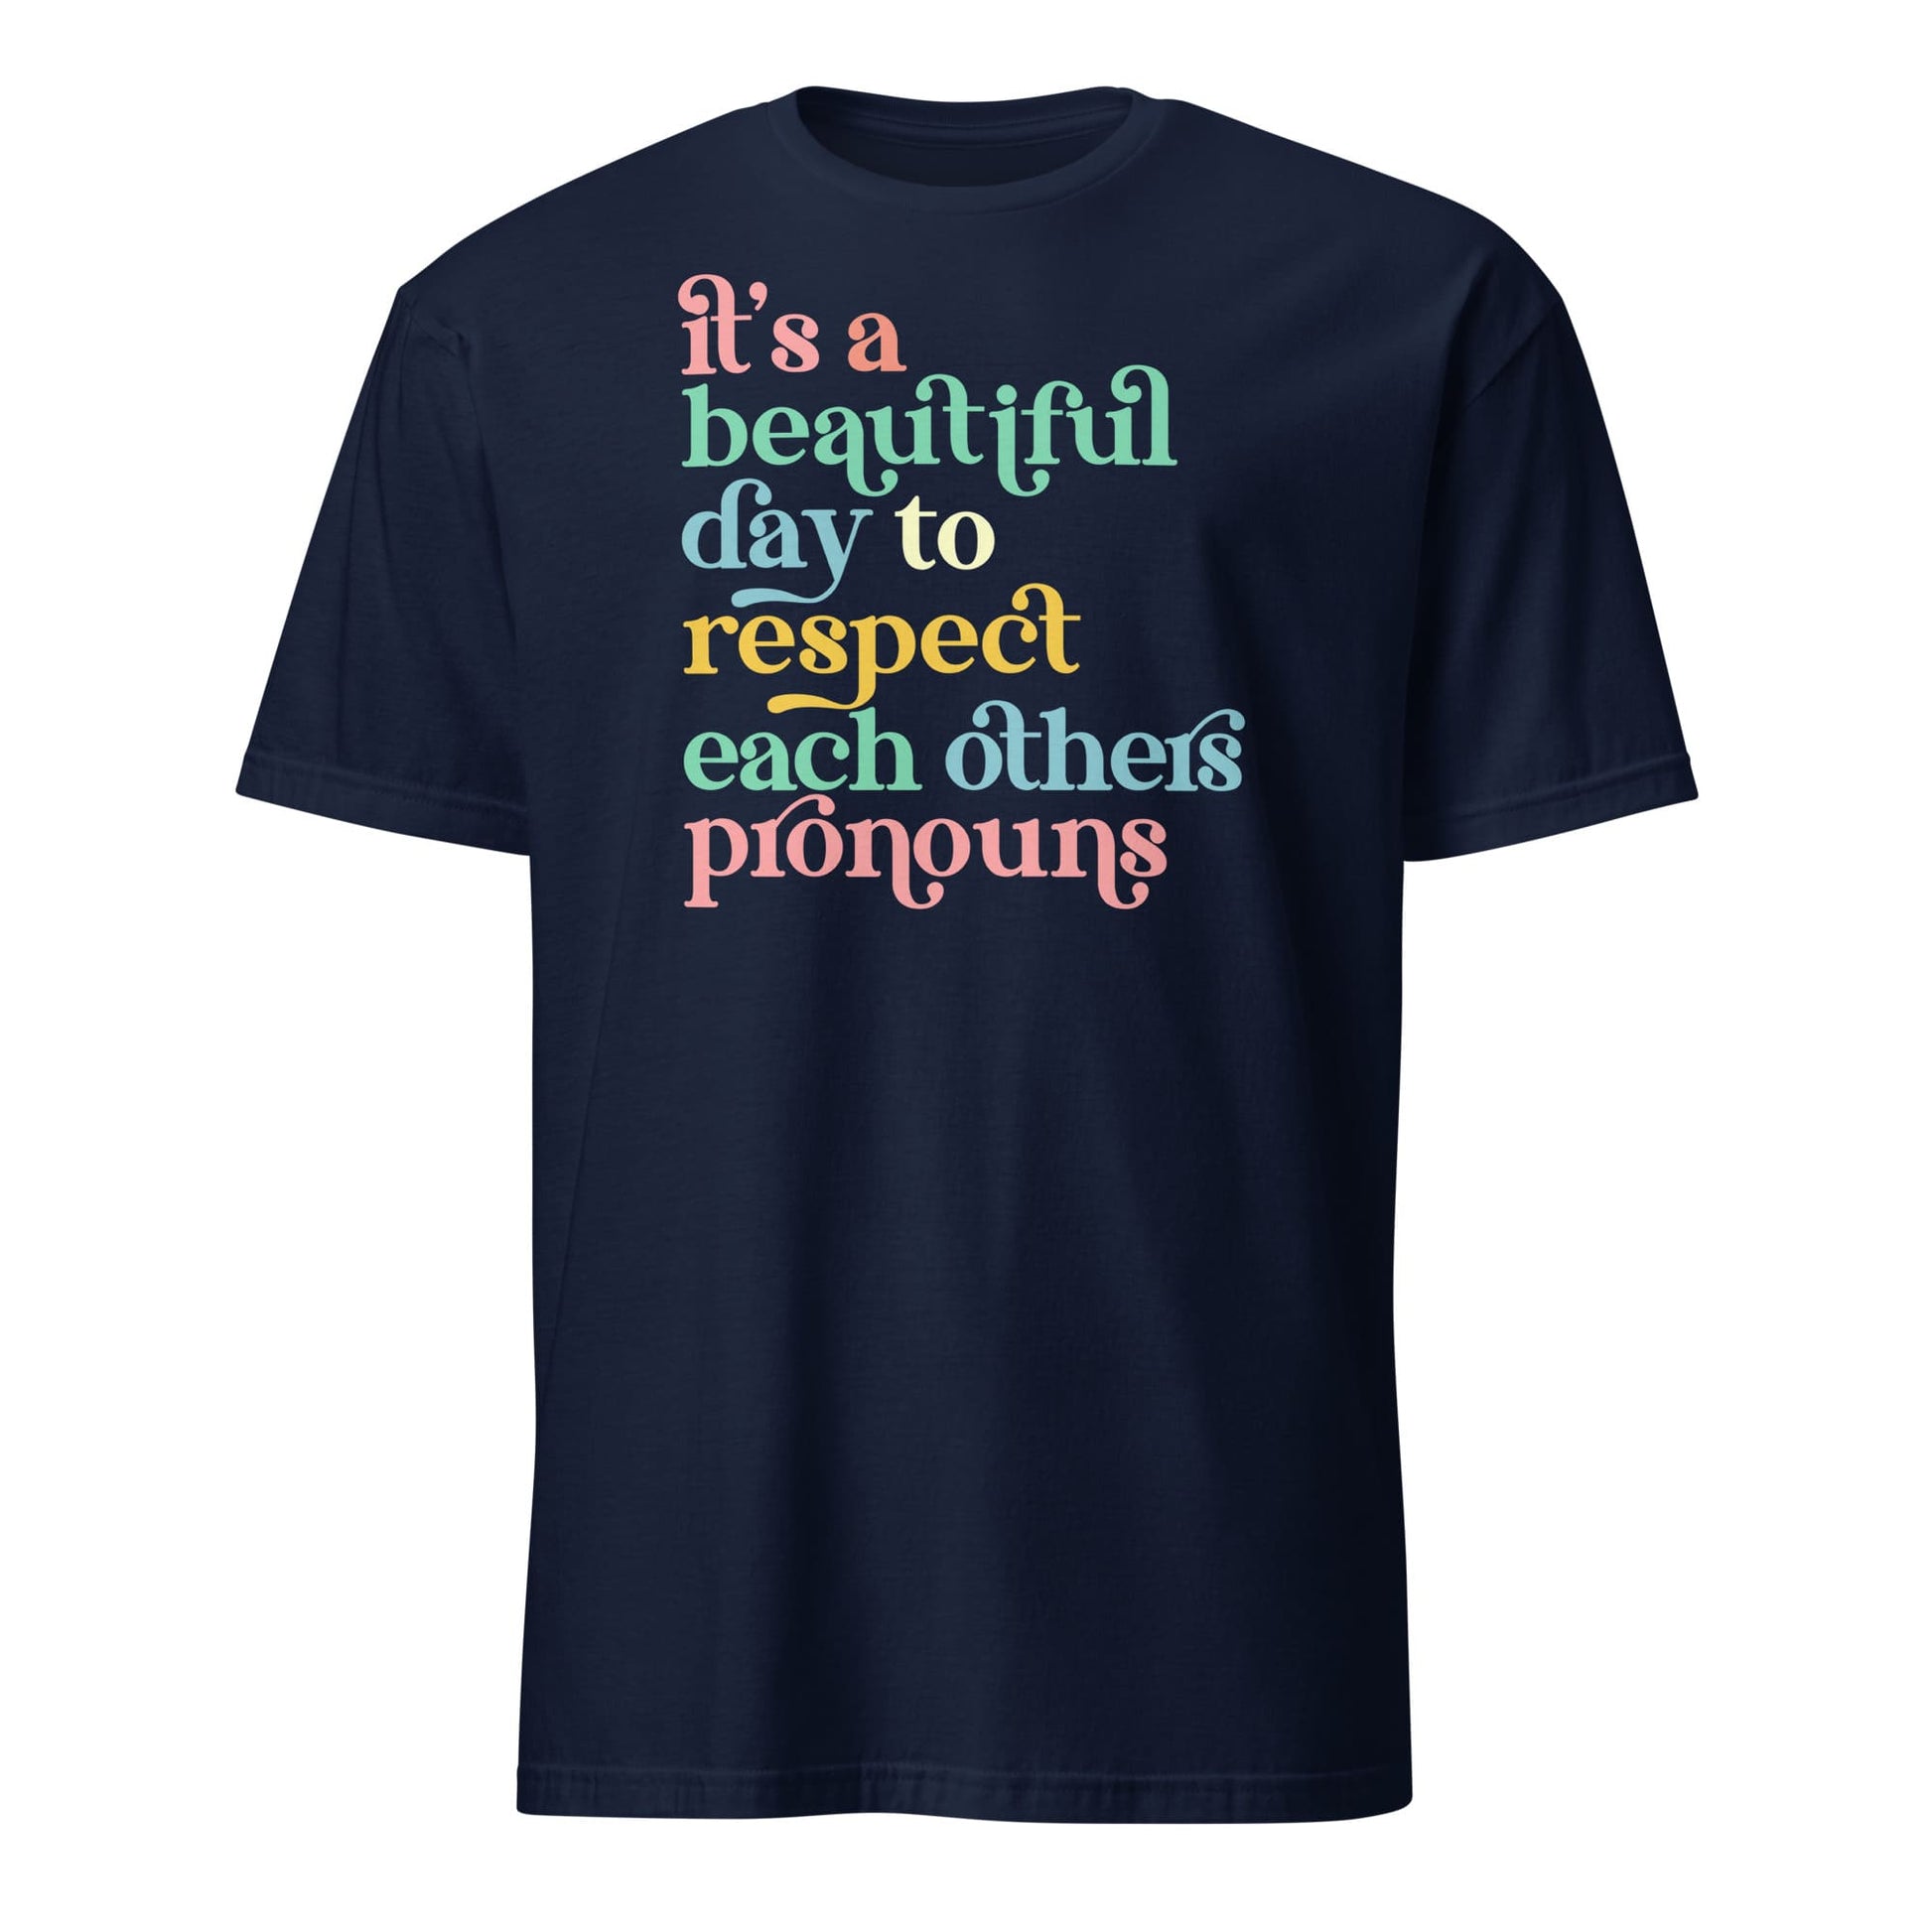 non binary shirt, respect pronouns tee, navy